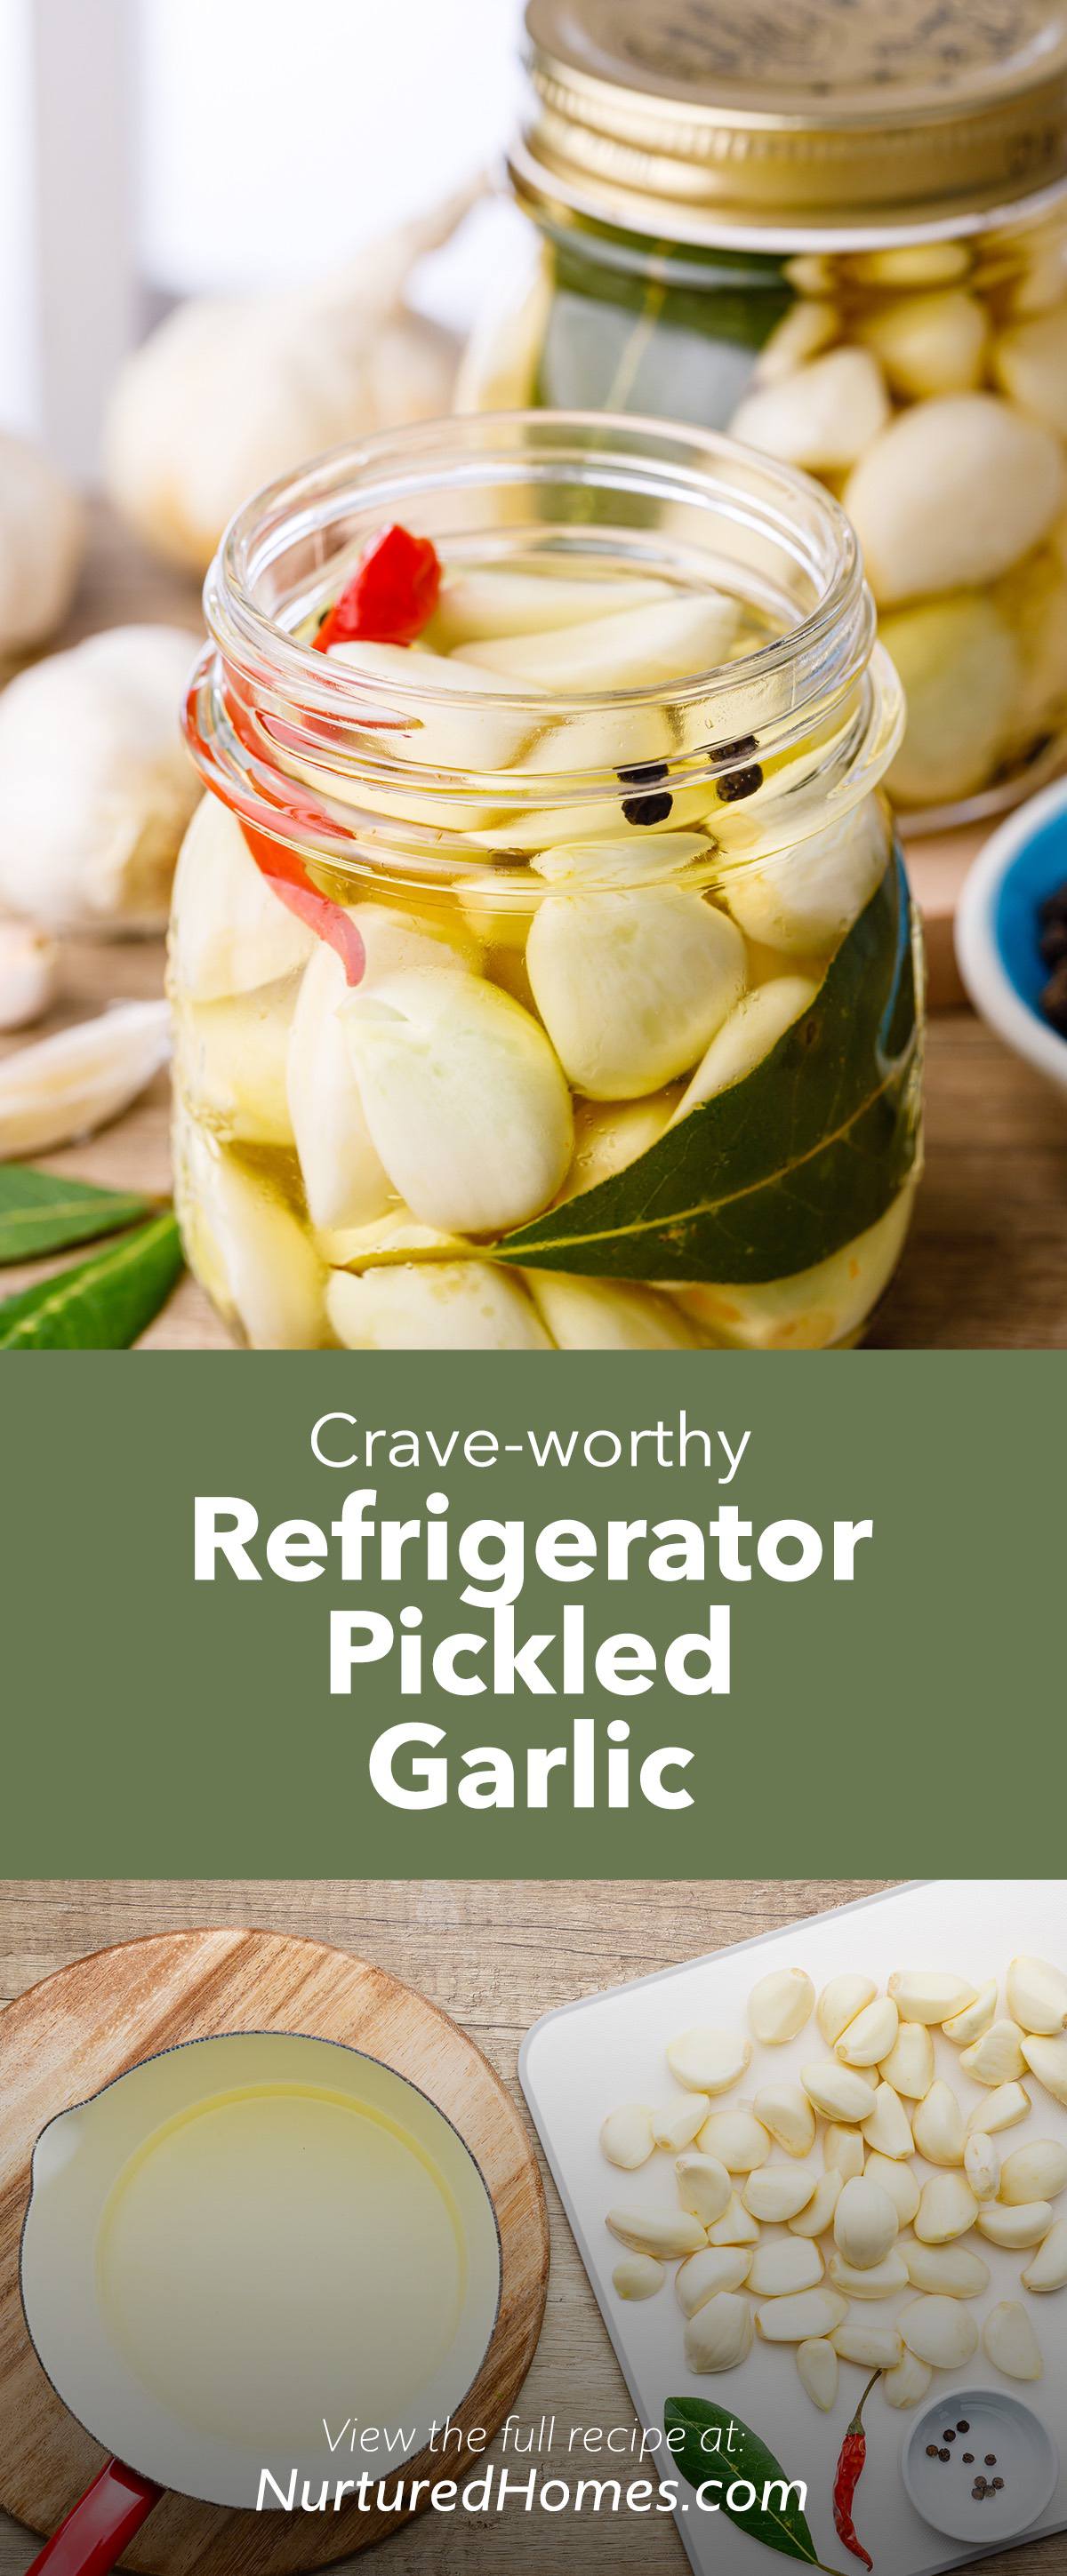 Crave-worthy Pickled Garlic